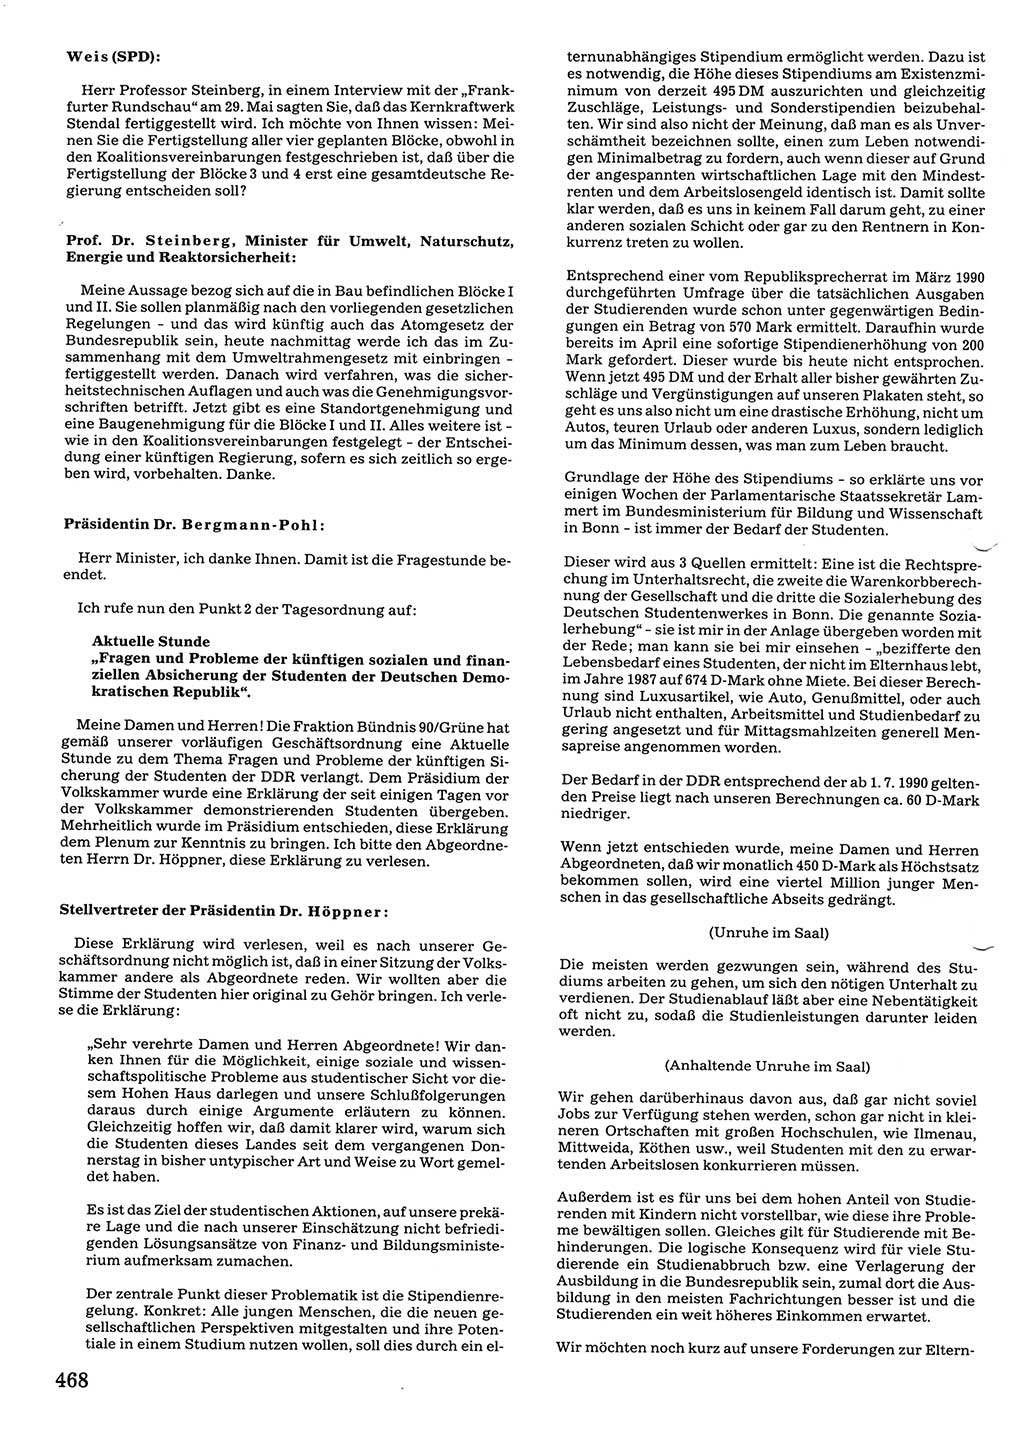 Tagungen der Volkskammer (VK) der Deutschen Demokratischen Republik (DDR), 10. Wahlperiode 1990, Seite 468 (VK. DDR 10. WP. 1990, Prot. Tg. 1-38, 5.4.-2.10.1990, S. 468)